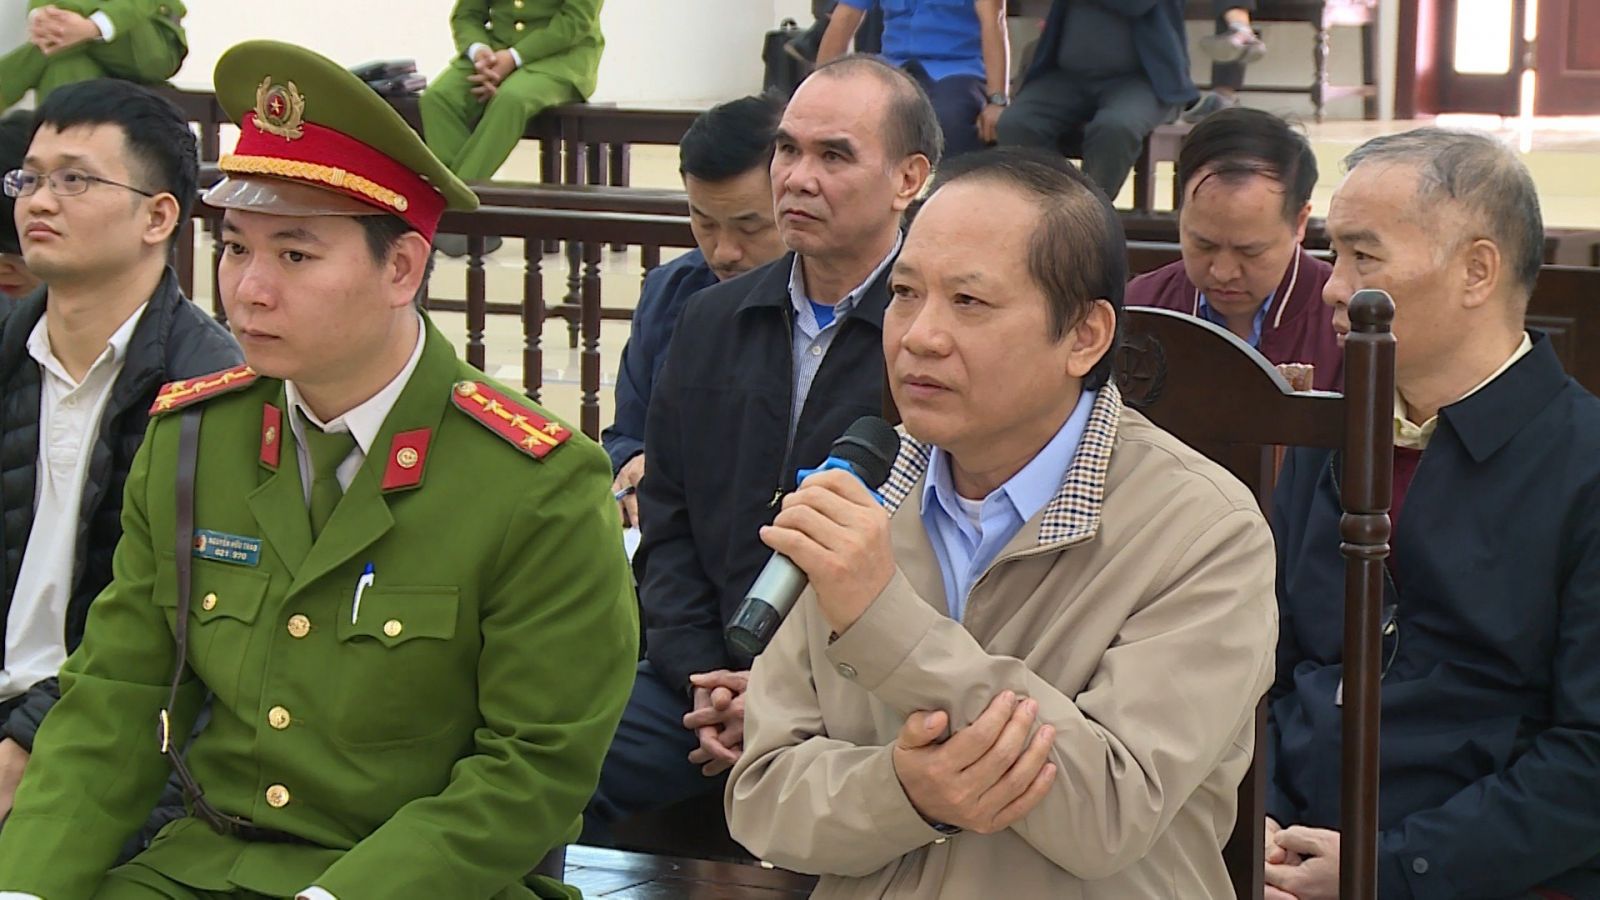 Cựu bộ trưởng Trương Minh Tuấn: Ông Nguyễn Bắc Son chỉ đạo đưa thương vụ AVG vào danh mục 'Mật'